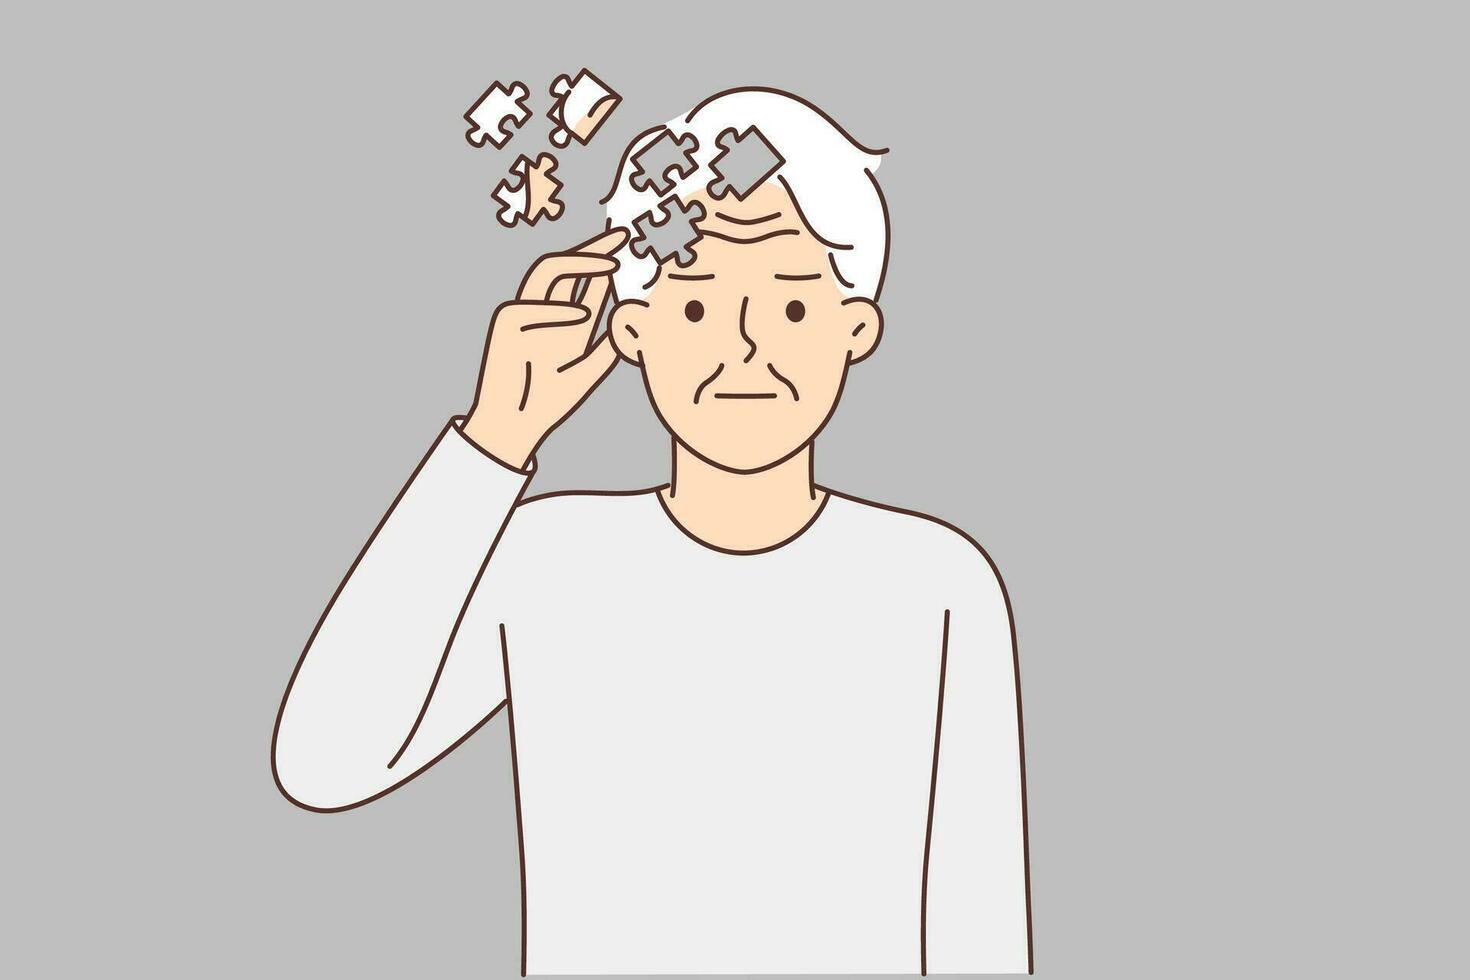 Alten Mann mit Rätsel in der Nähe von Kopf, symbolisieren Demenz, leidet von Erinnerung Probleme oder Alzheimer Krankheit. alt Mann Bedürfnisse Hilfe von Arzt oder Drogen zu behandeln Demenz verursacht durch fortgeschritten Alter. vektor